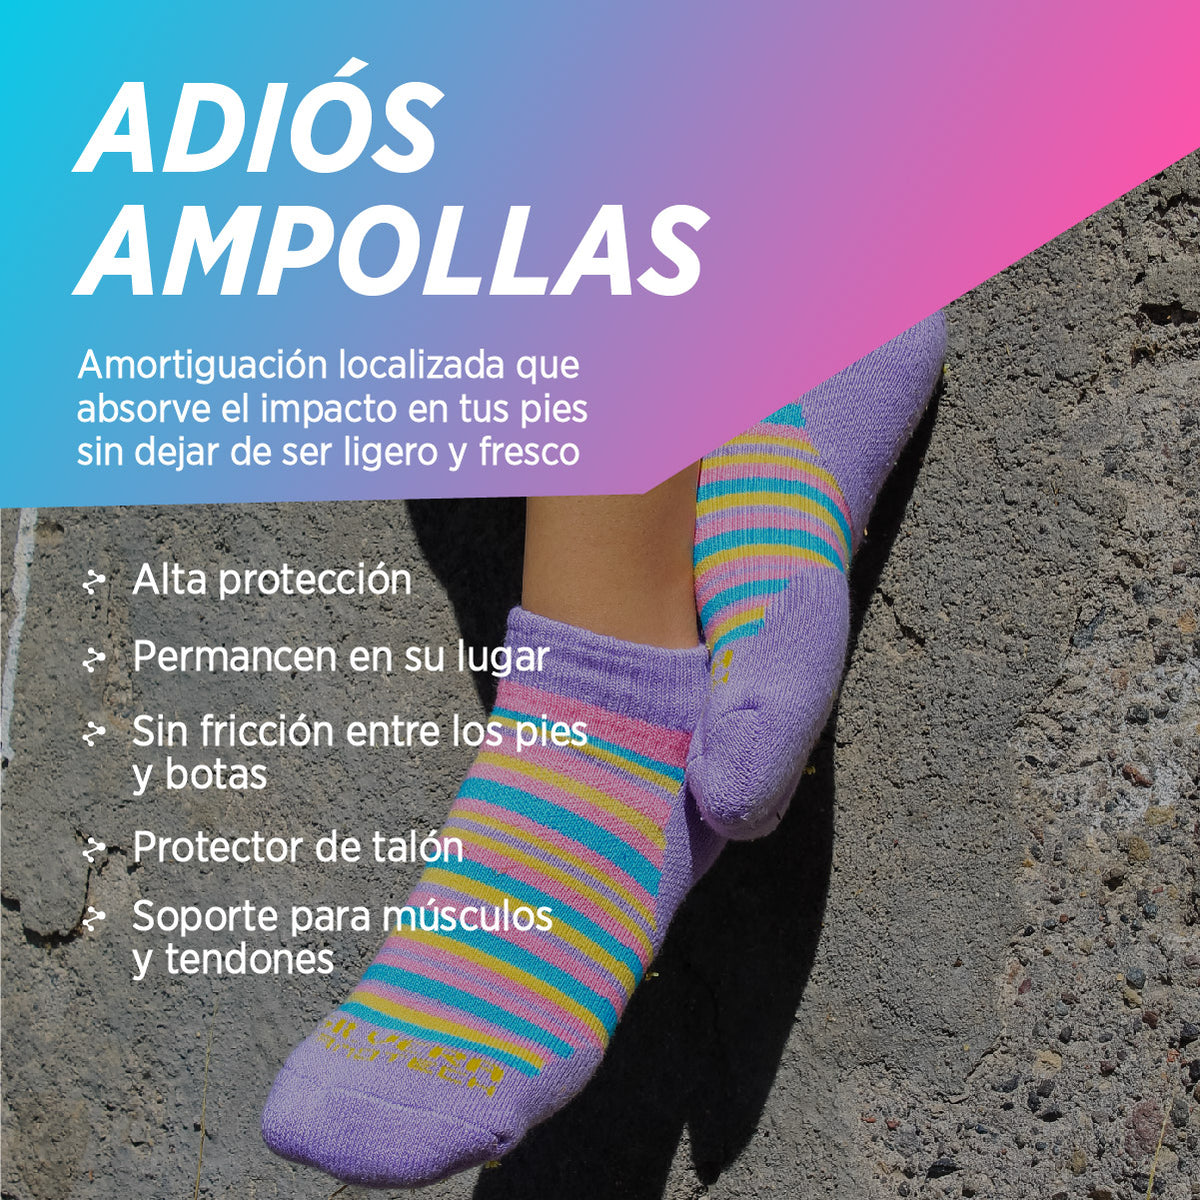 Athletic-Crew-Calcetines para hombre, calcetines acolchados con absorción  de humedad y soporte de arco para correr, senderismo, botas de trabajo, 3